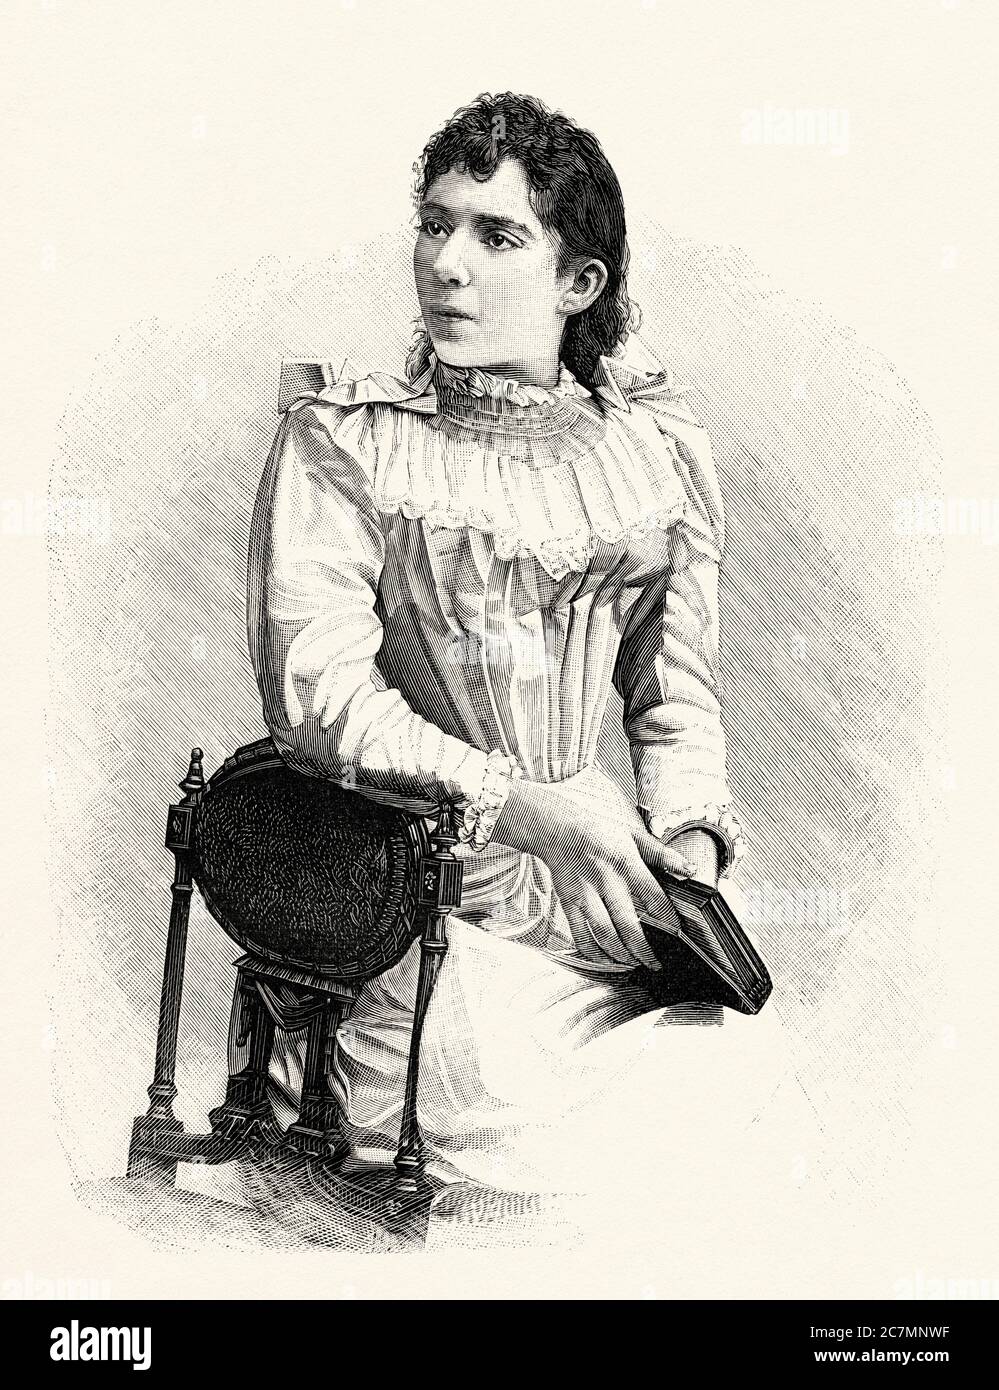 María Luisa Guerra (Gualeguaychú 1869 - San Sebastián 1949) était pianiste Argentine. De la Ilustracion Española y Americana 1895 Banque D'Images